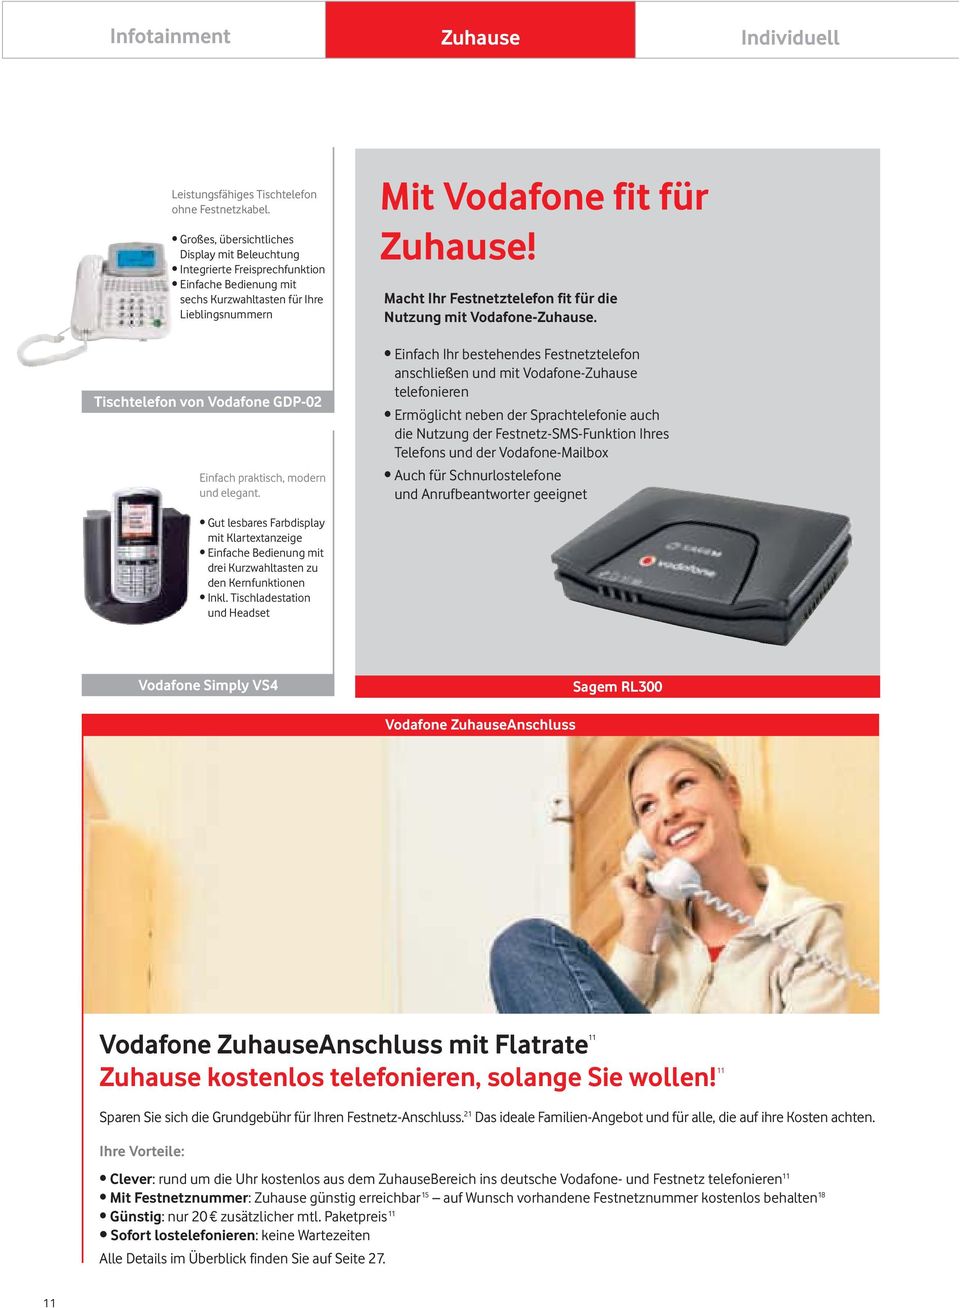 Macht Ihr Festnetztelefon fit für die Nutzung mit VodafoneZuhause. Tischtelefon von Vodafone GDP02 Einfach praktisch, modern und elegant.